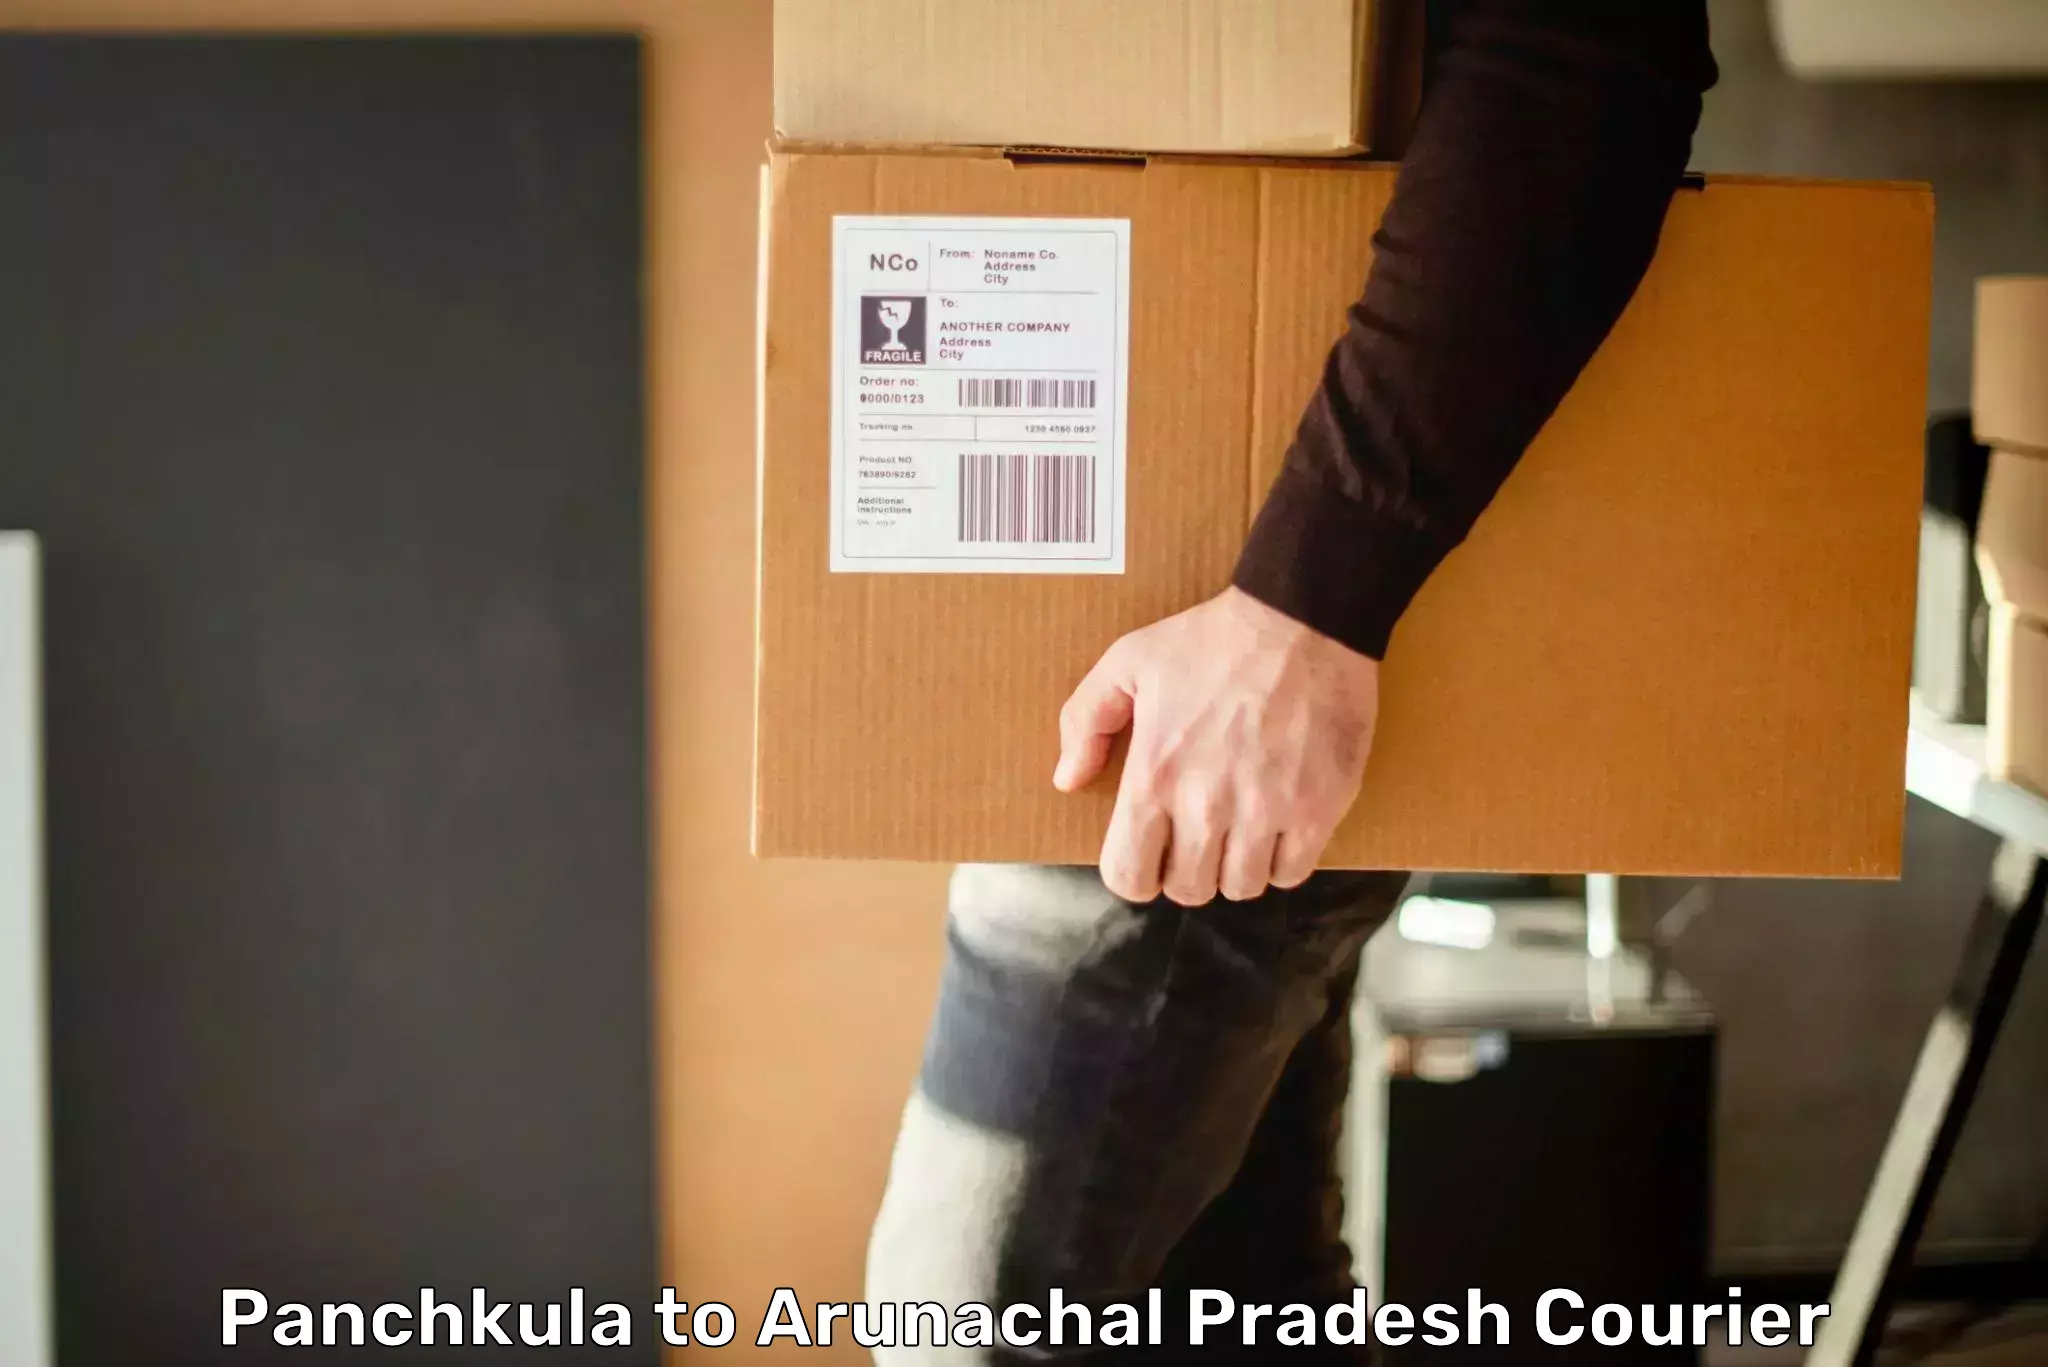 Pharmaceutical courier Panchkula to Arunachal Pradesh